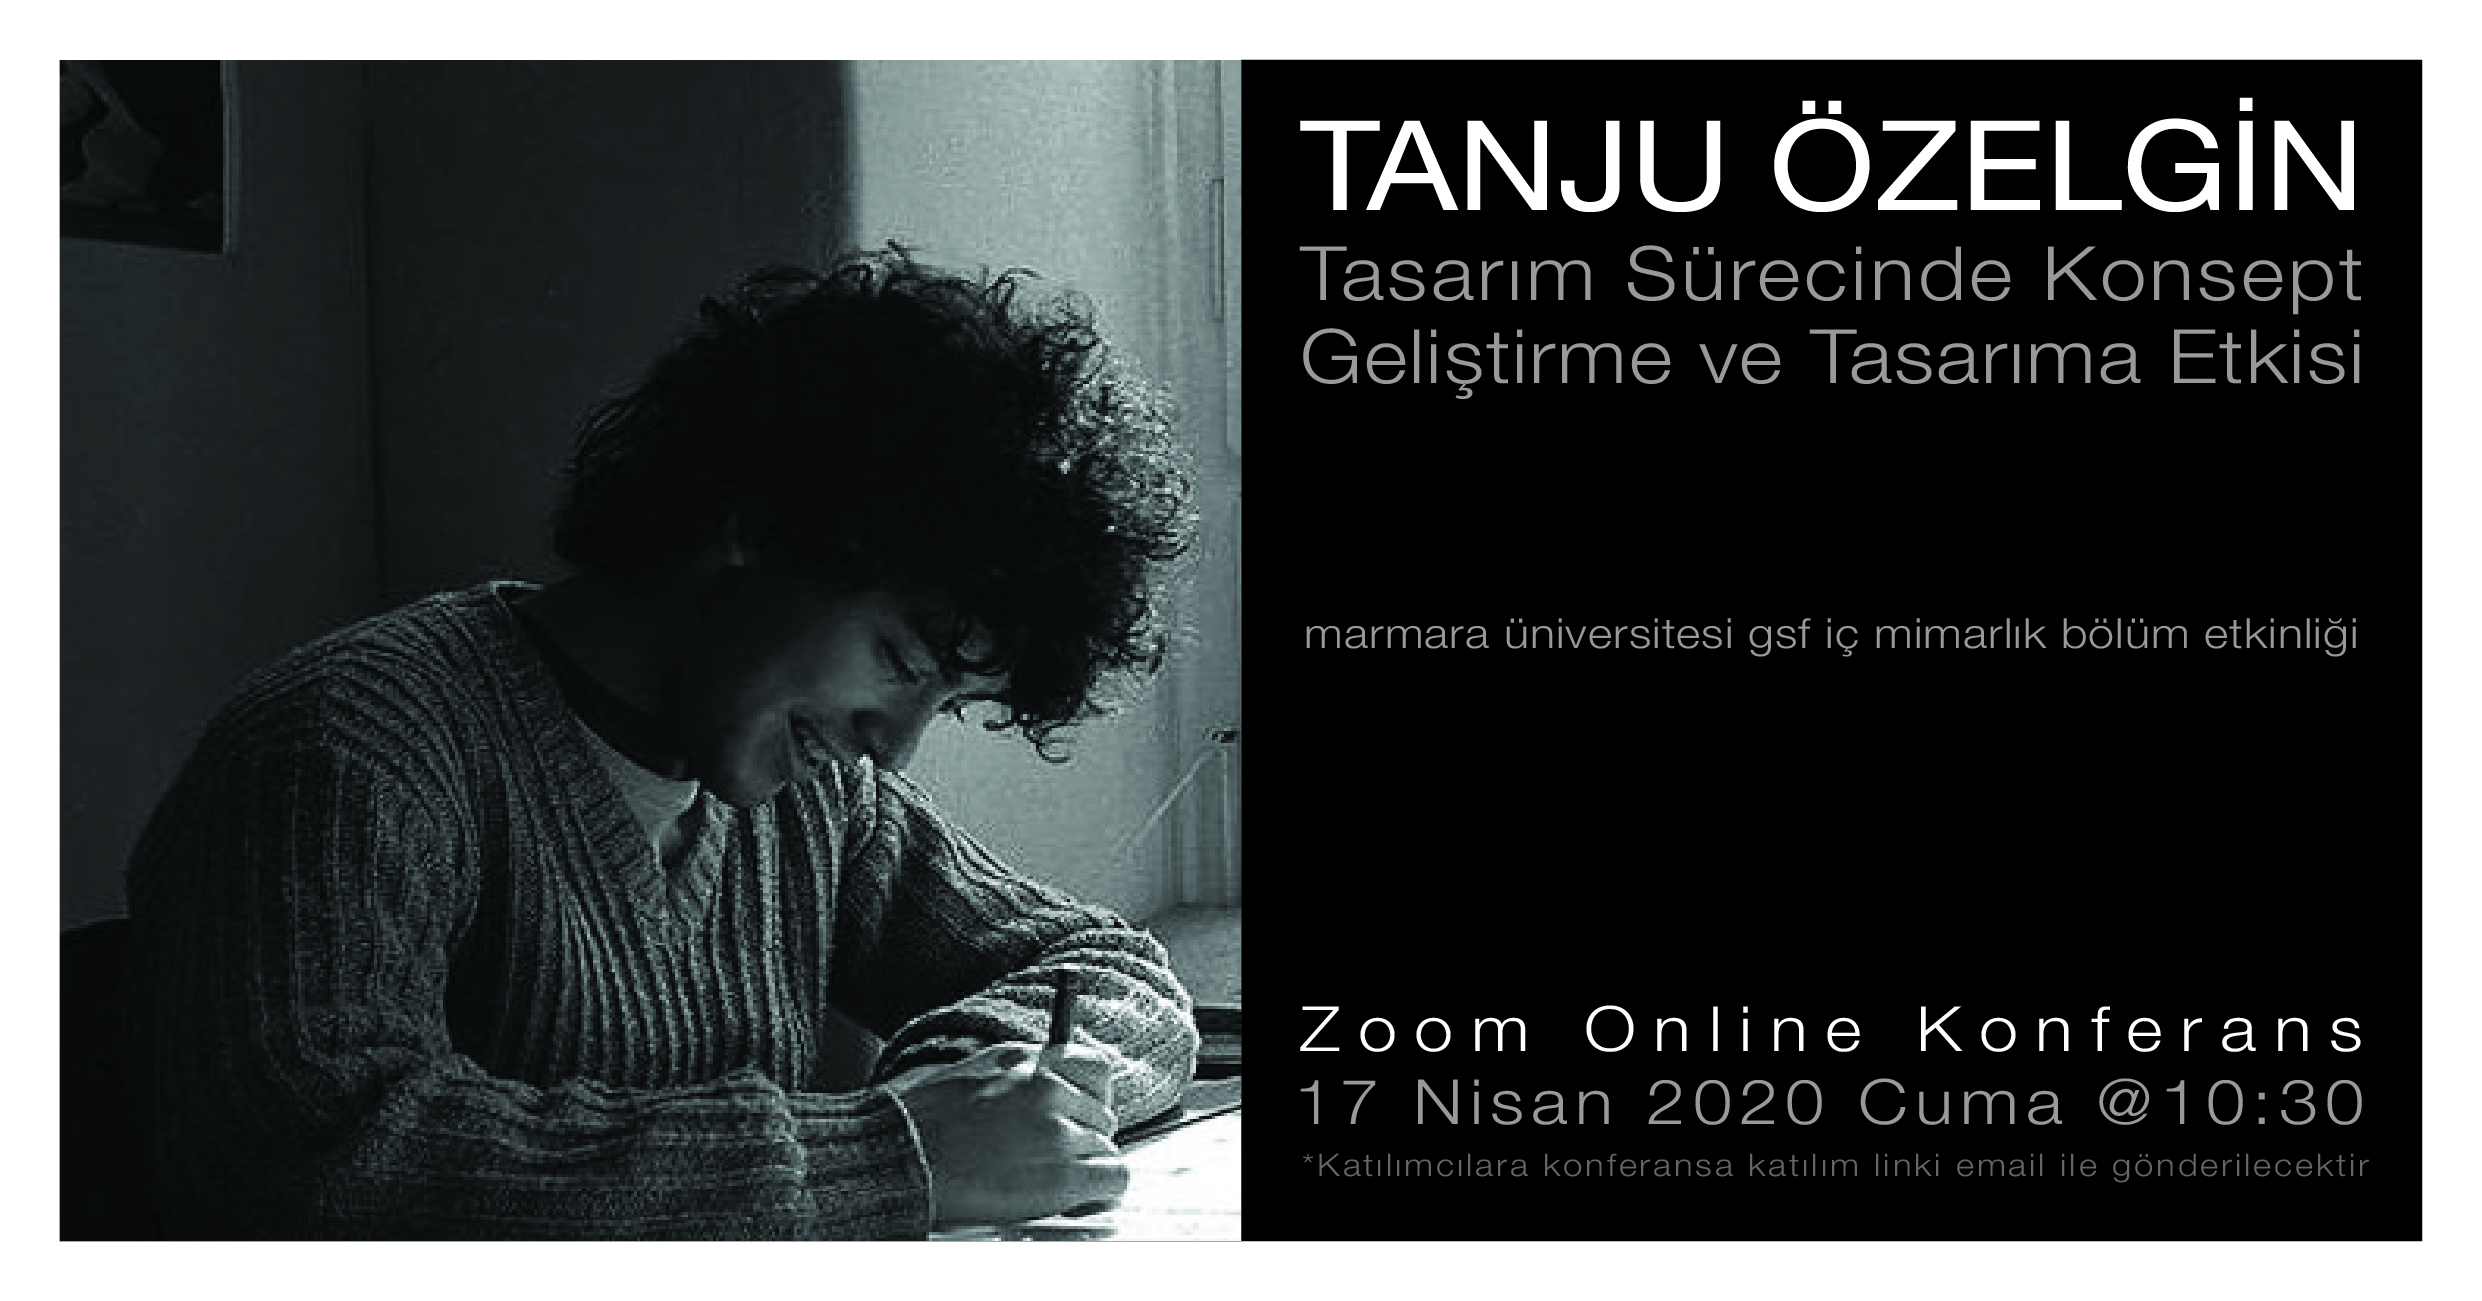 Tanju Özelgin 02-01.jpg (2.54 MB)